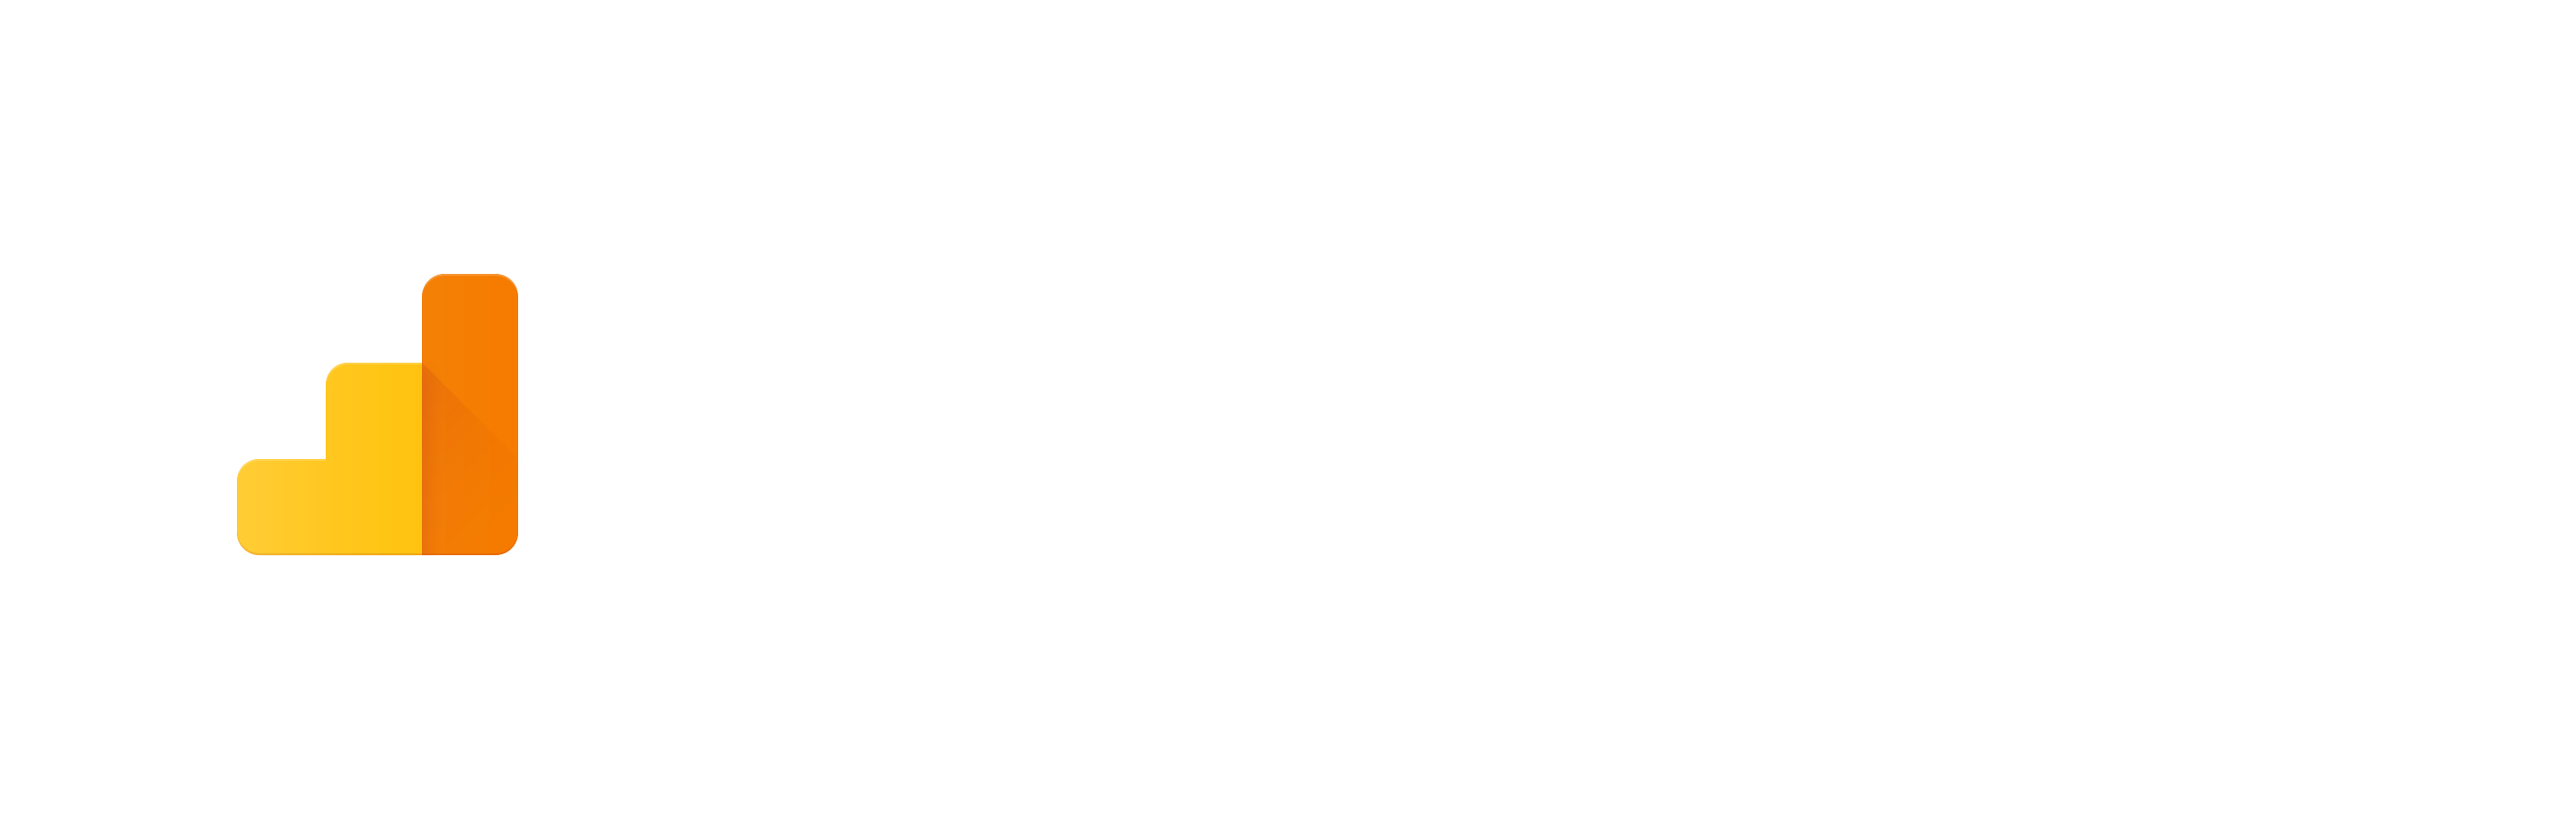 Analytics developer branding guidelines. Google logo white png